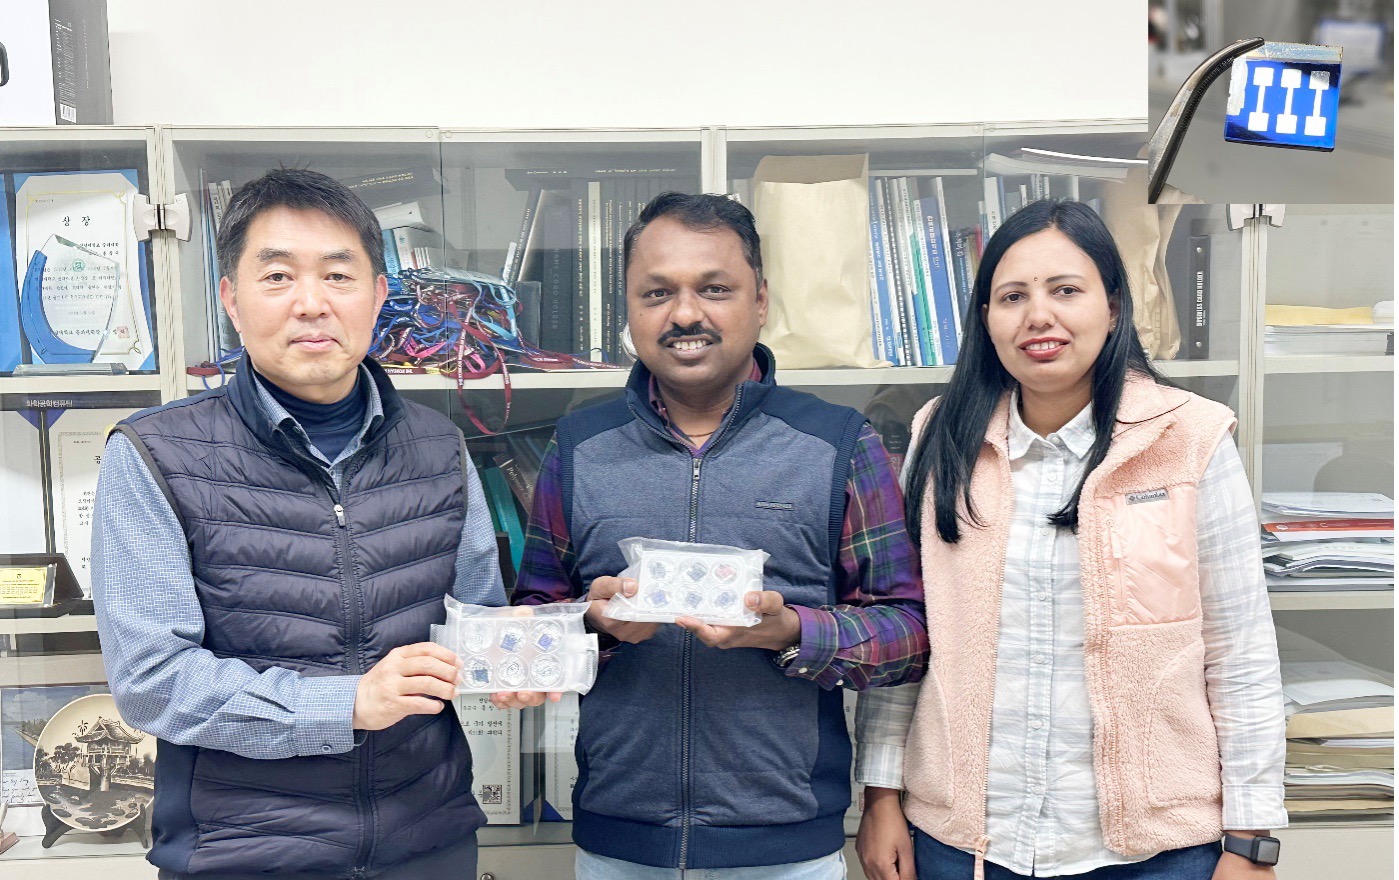 왼쪽부터 홍창국 교수, Sawanta S. Mali 박사, Jyoti V. Patil 박사가 완전 무기 기반 하이브리드 탠덤 태양전지를 보여주고 있다.